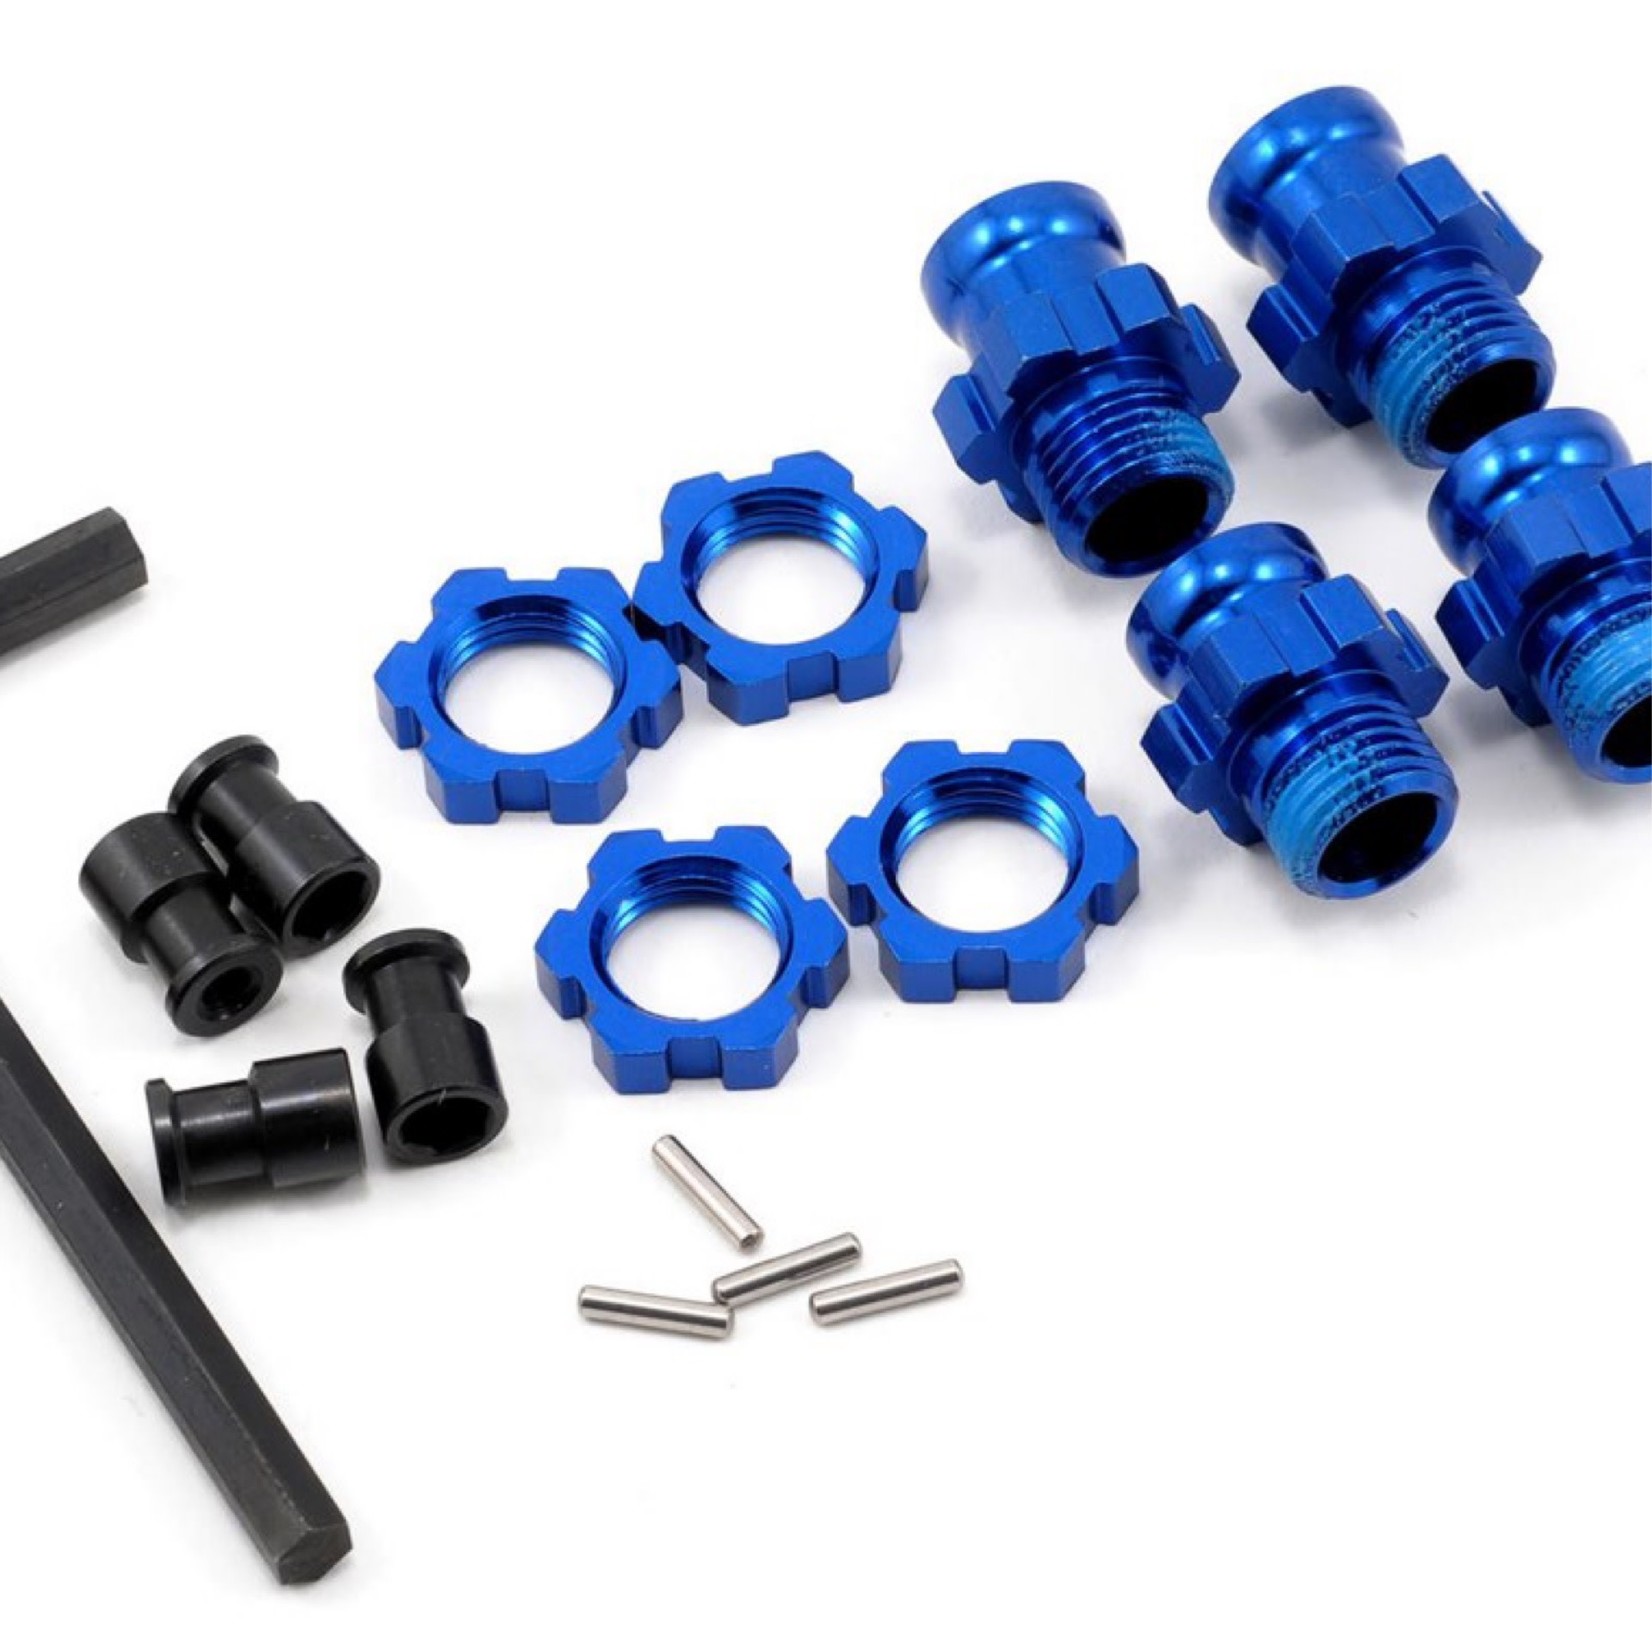 Traxxas Traxxas Aluminum 17mm Wheel Adapter Set (Blue) (4) #5853X